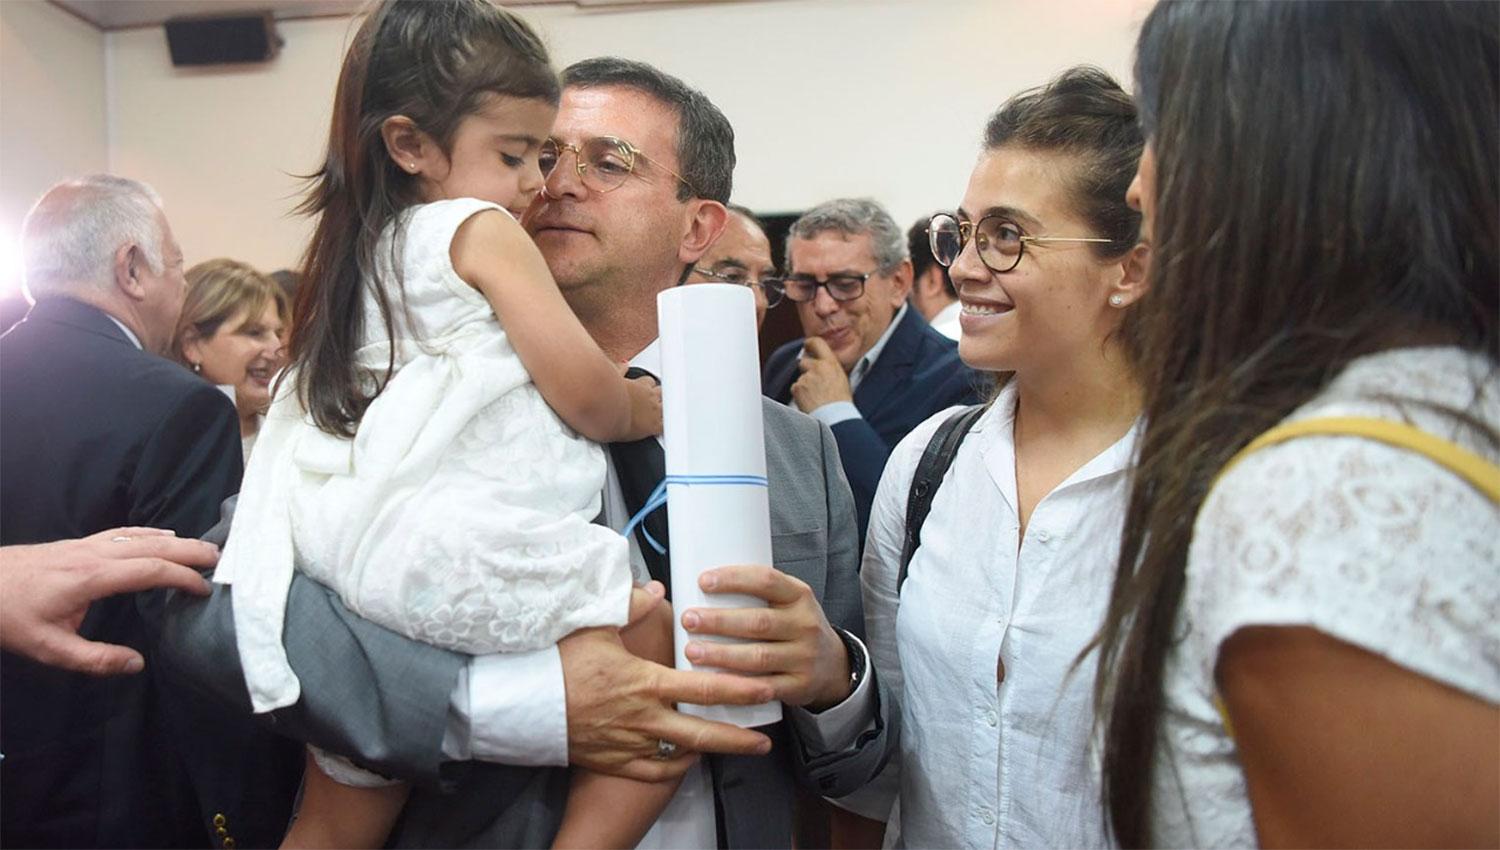 EN BRAZOS. Ya con diploma en mano, Cisneros recibe el saludo de su nieta.